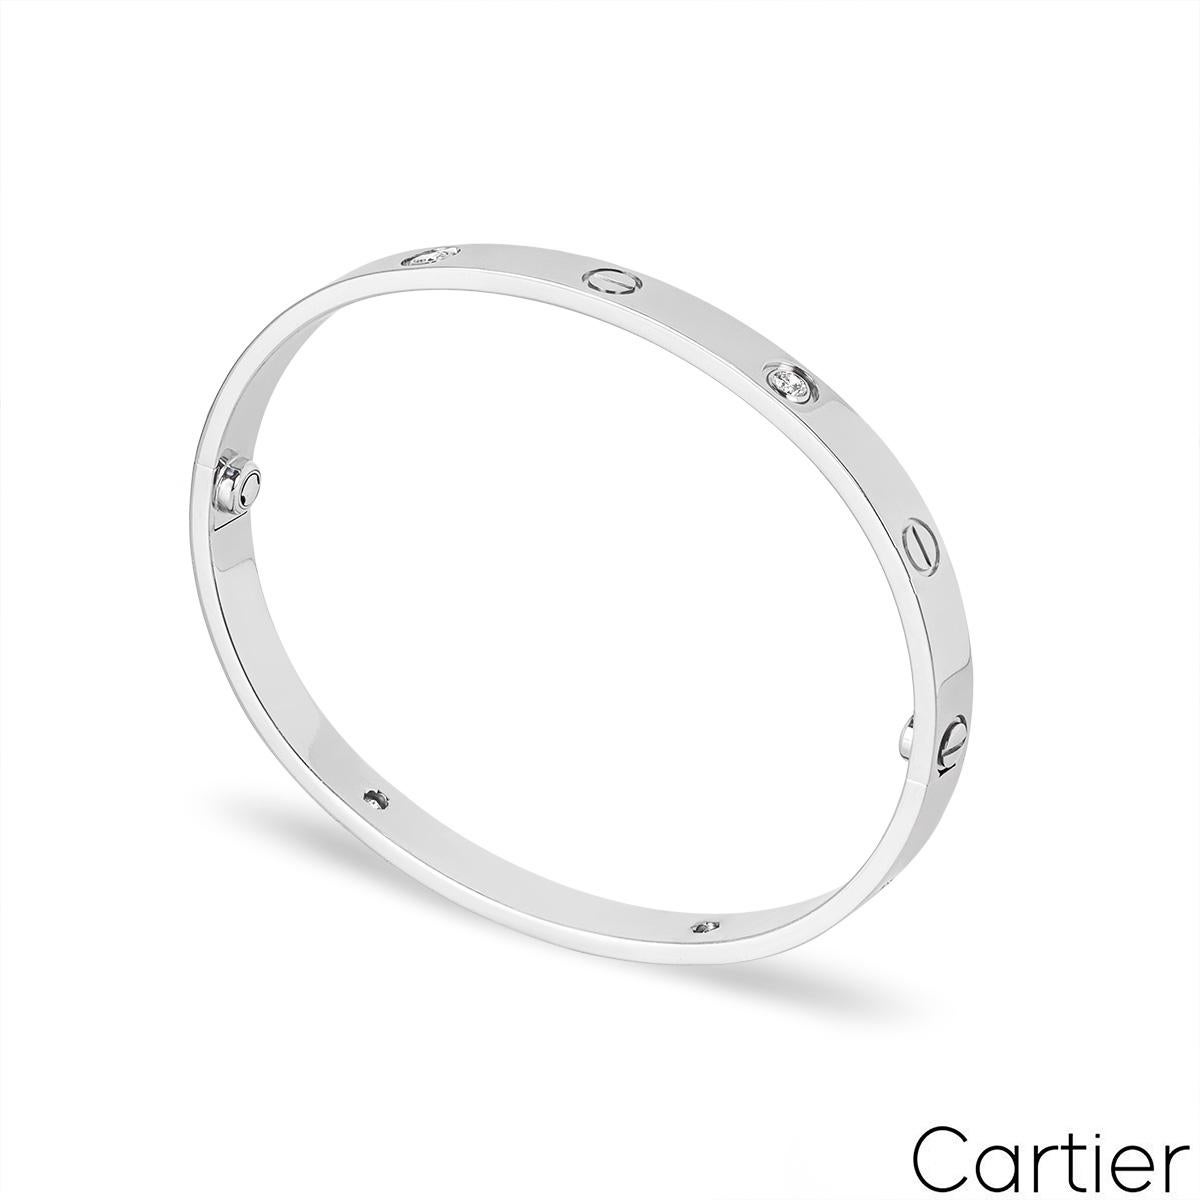 Cartier Halbdiamantarmband aus 18 Karat Weißgold aus der Collection'S Love. Das Armband besteht aus den ikonischen Schraubenmotiven am äußeren Rand, die sich mit 4 runden Diamanten im Brillantschliff mit einem Gesamtgewicht von 0,42 ct abwechseln.